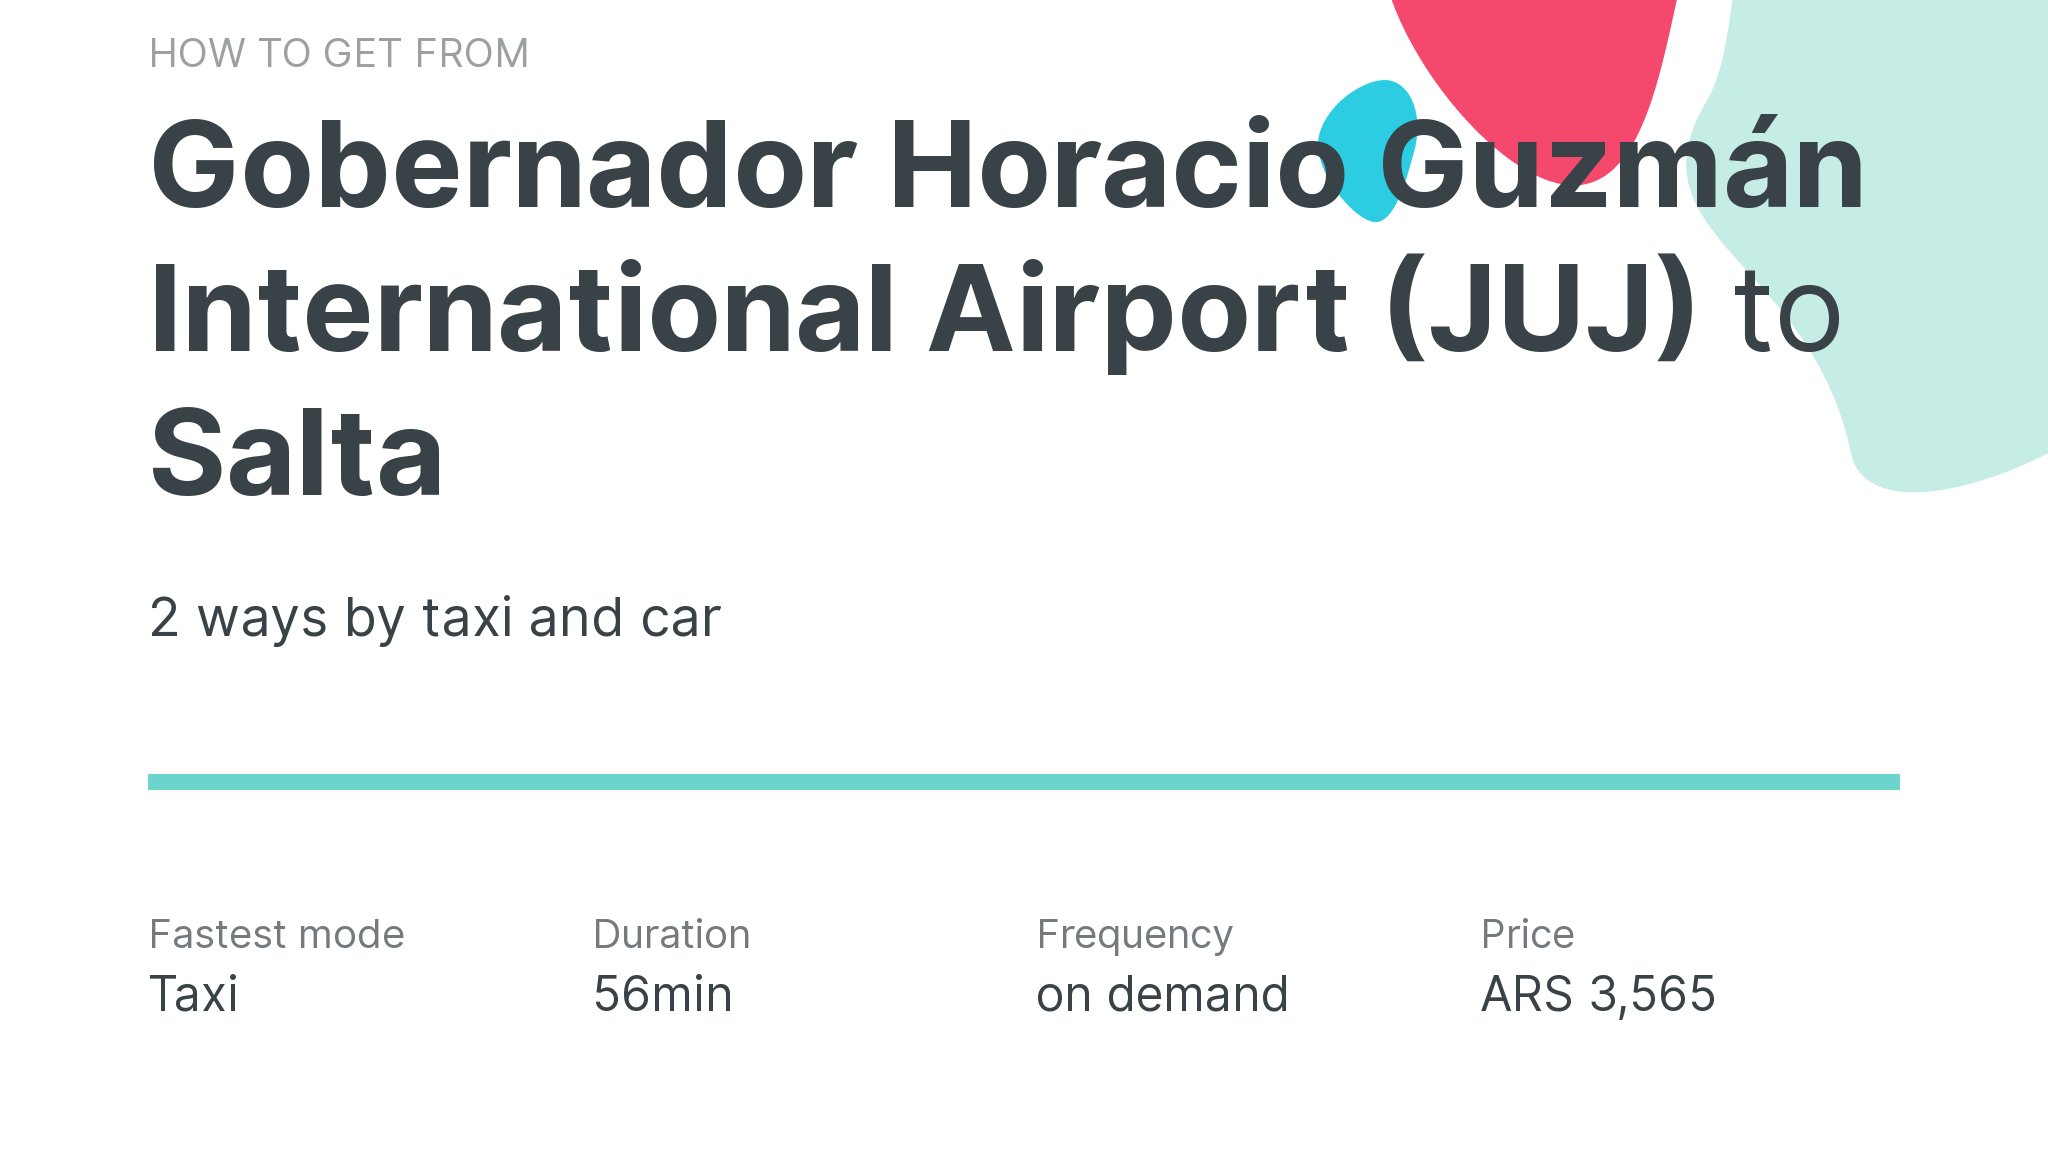 How do I get from Gobernador Horacio Guzmán International Airport (JUJ) to Salta